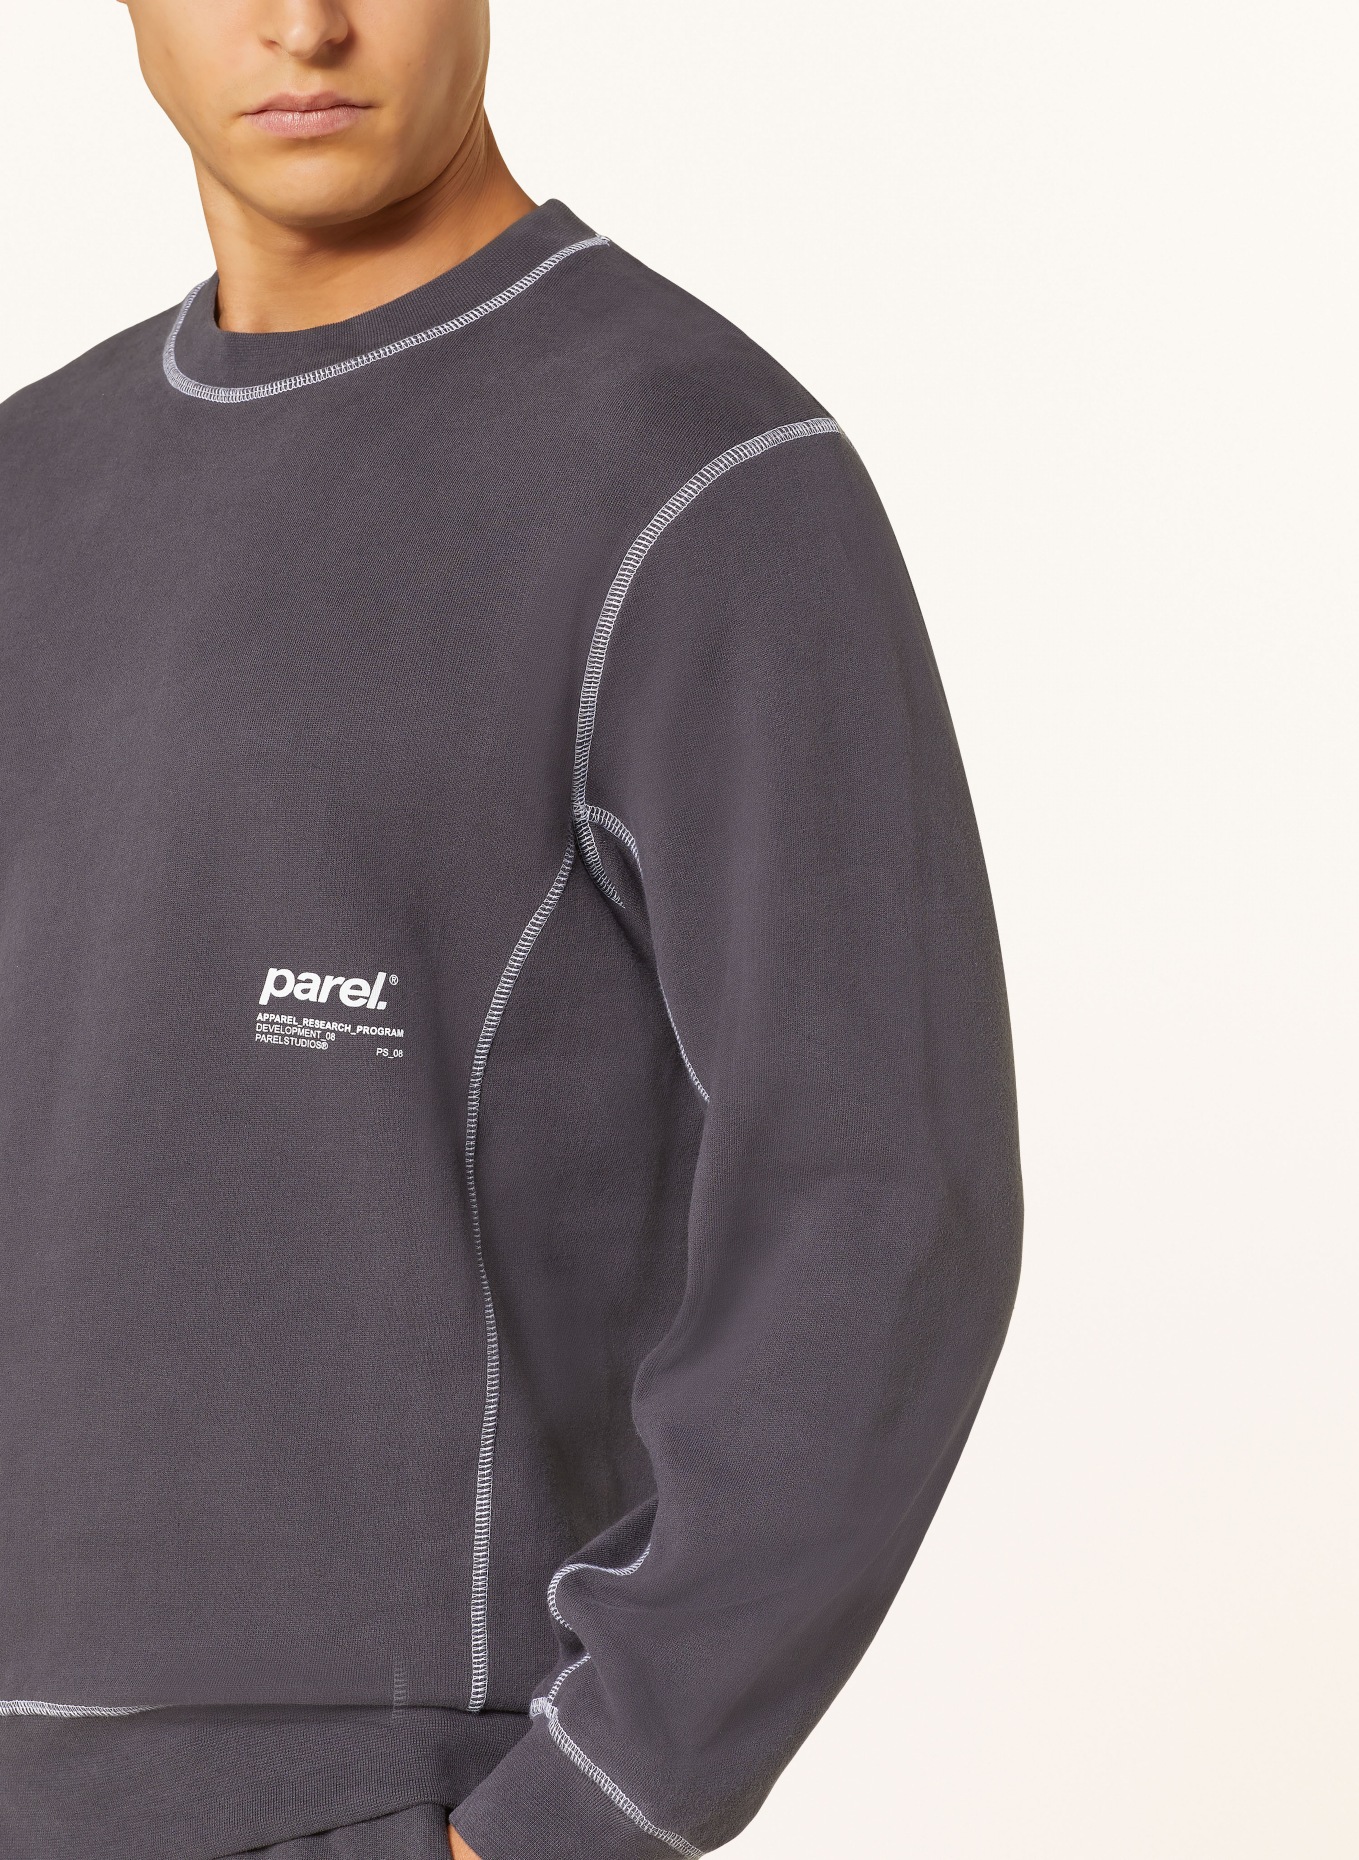 parel. Sweatshirt, Color: DARK GRAY (Image 4)